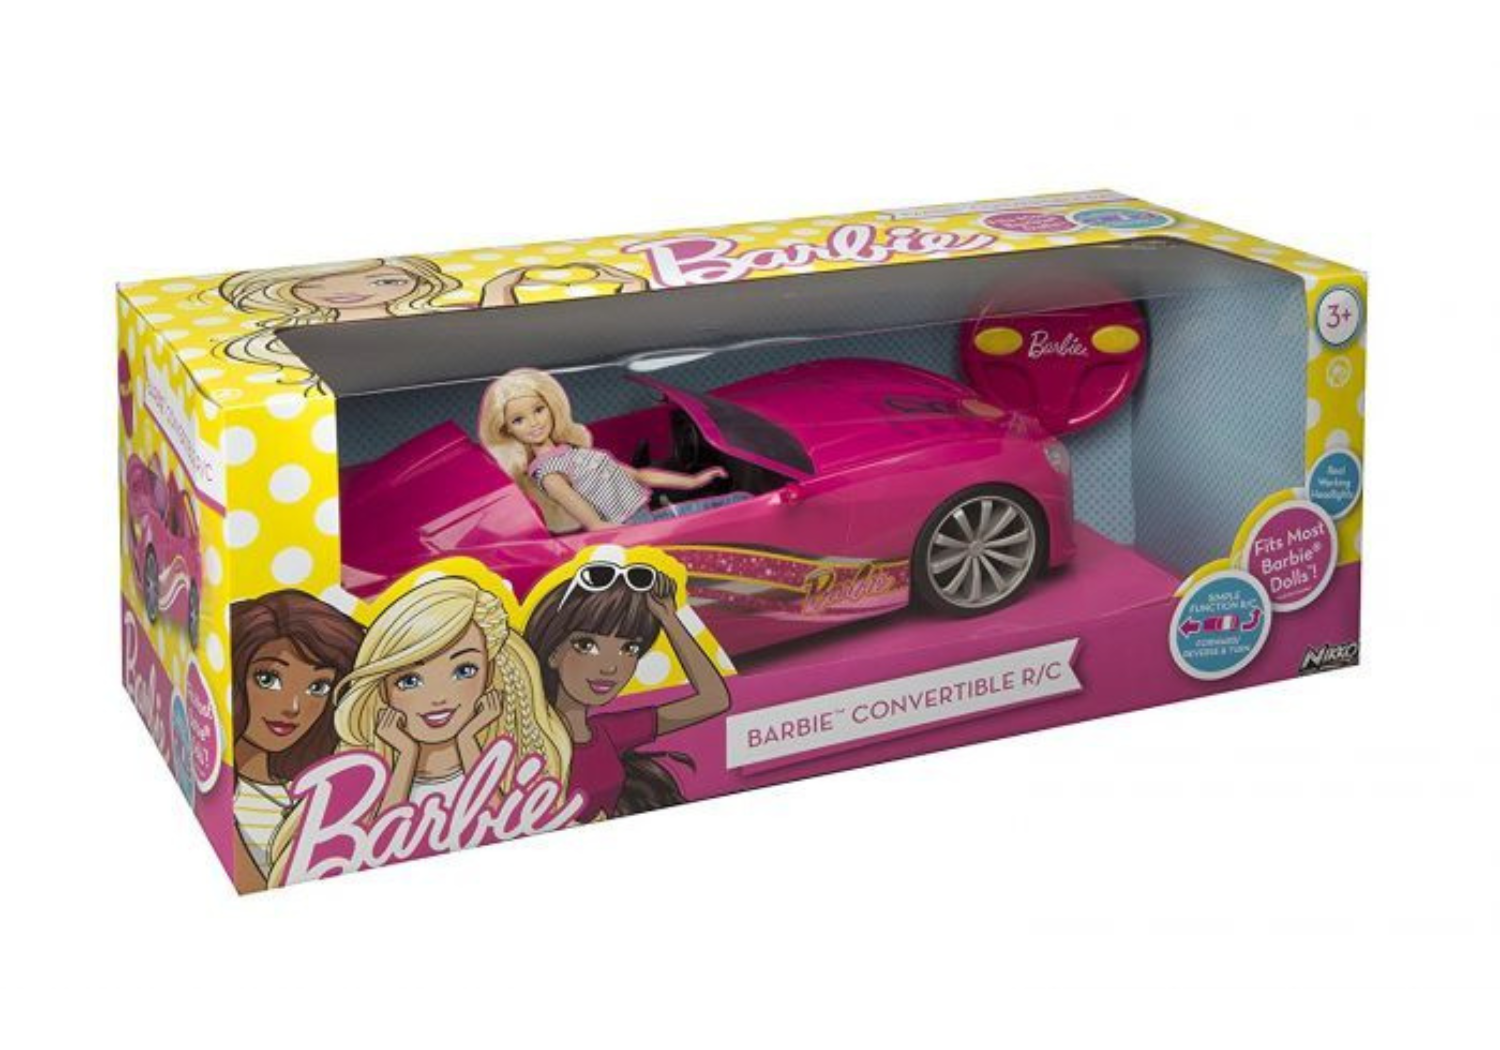 Voiture télécommandée Mattel Voiture radio commandée Barbie Dream